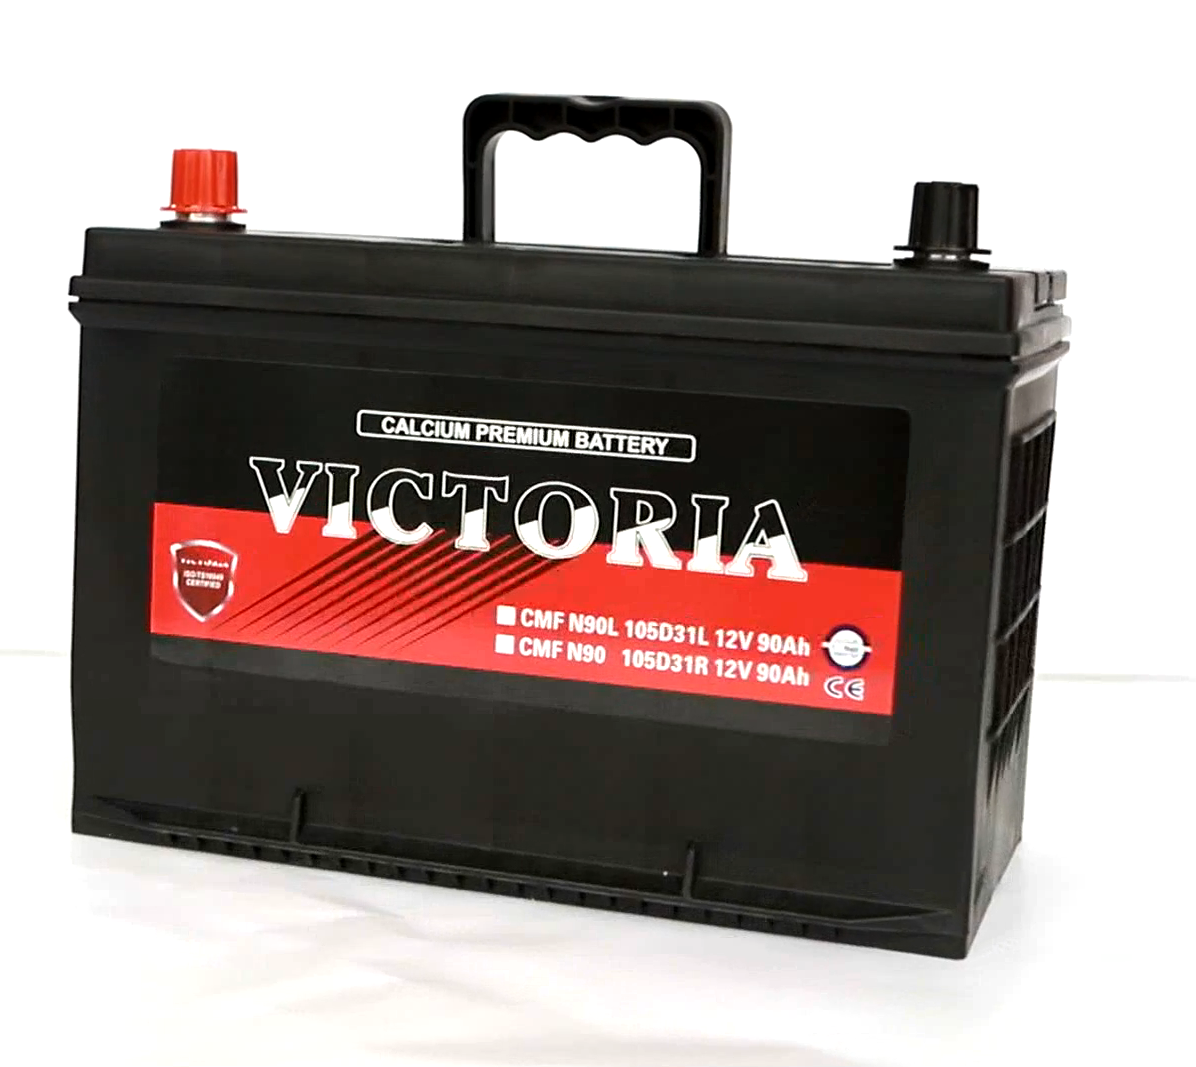 Victoria 105D31 Bateria de carro -8